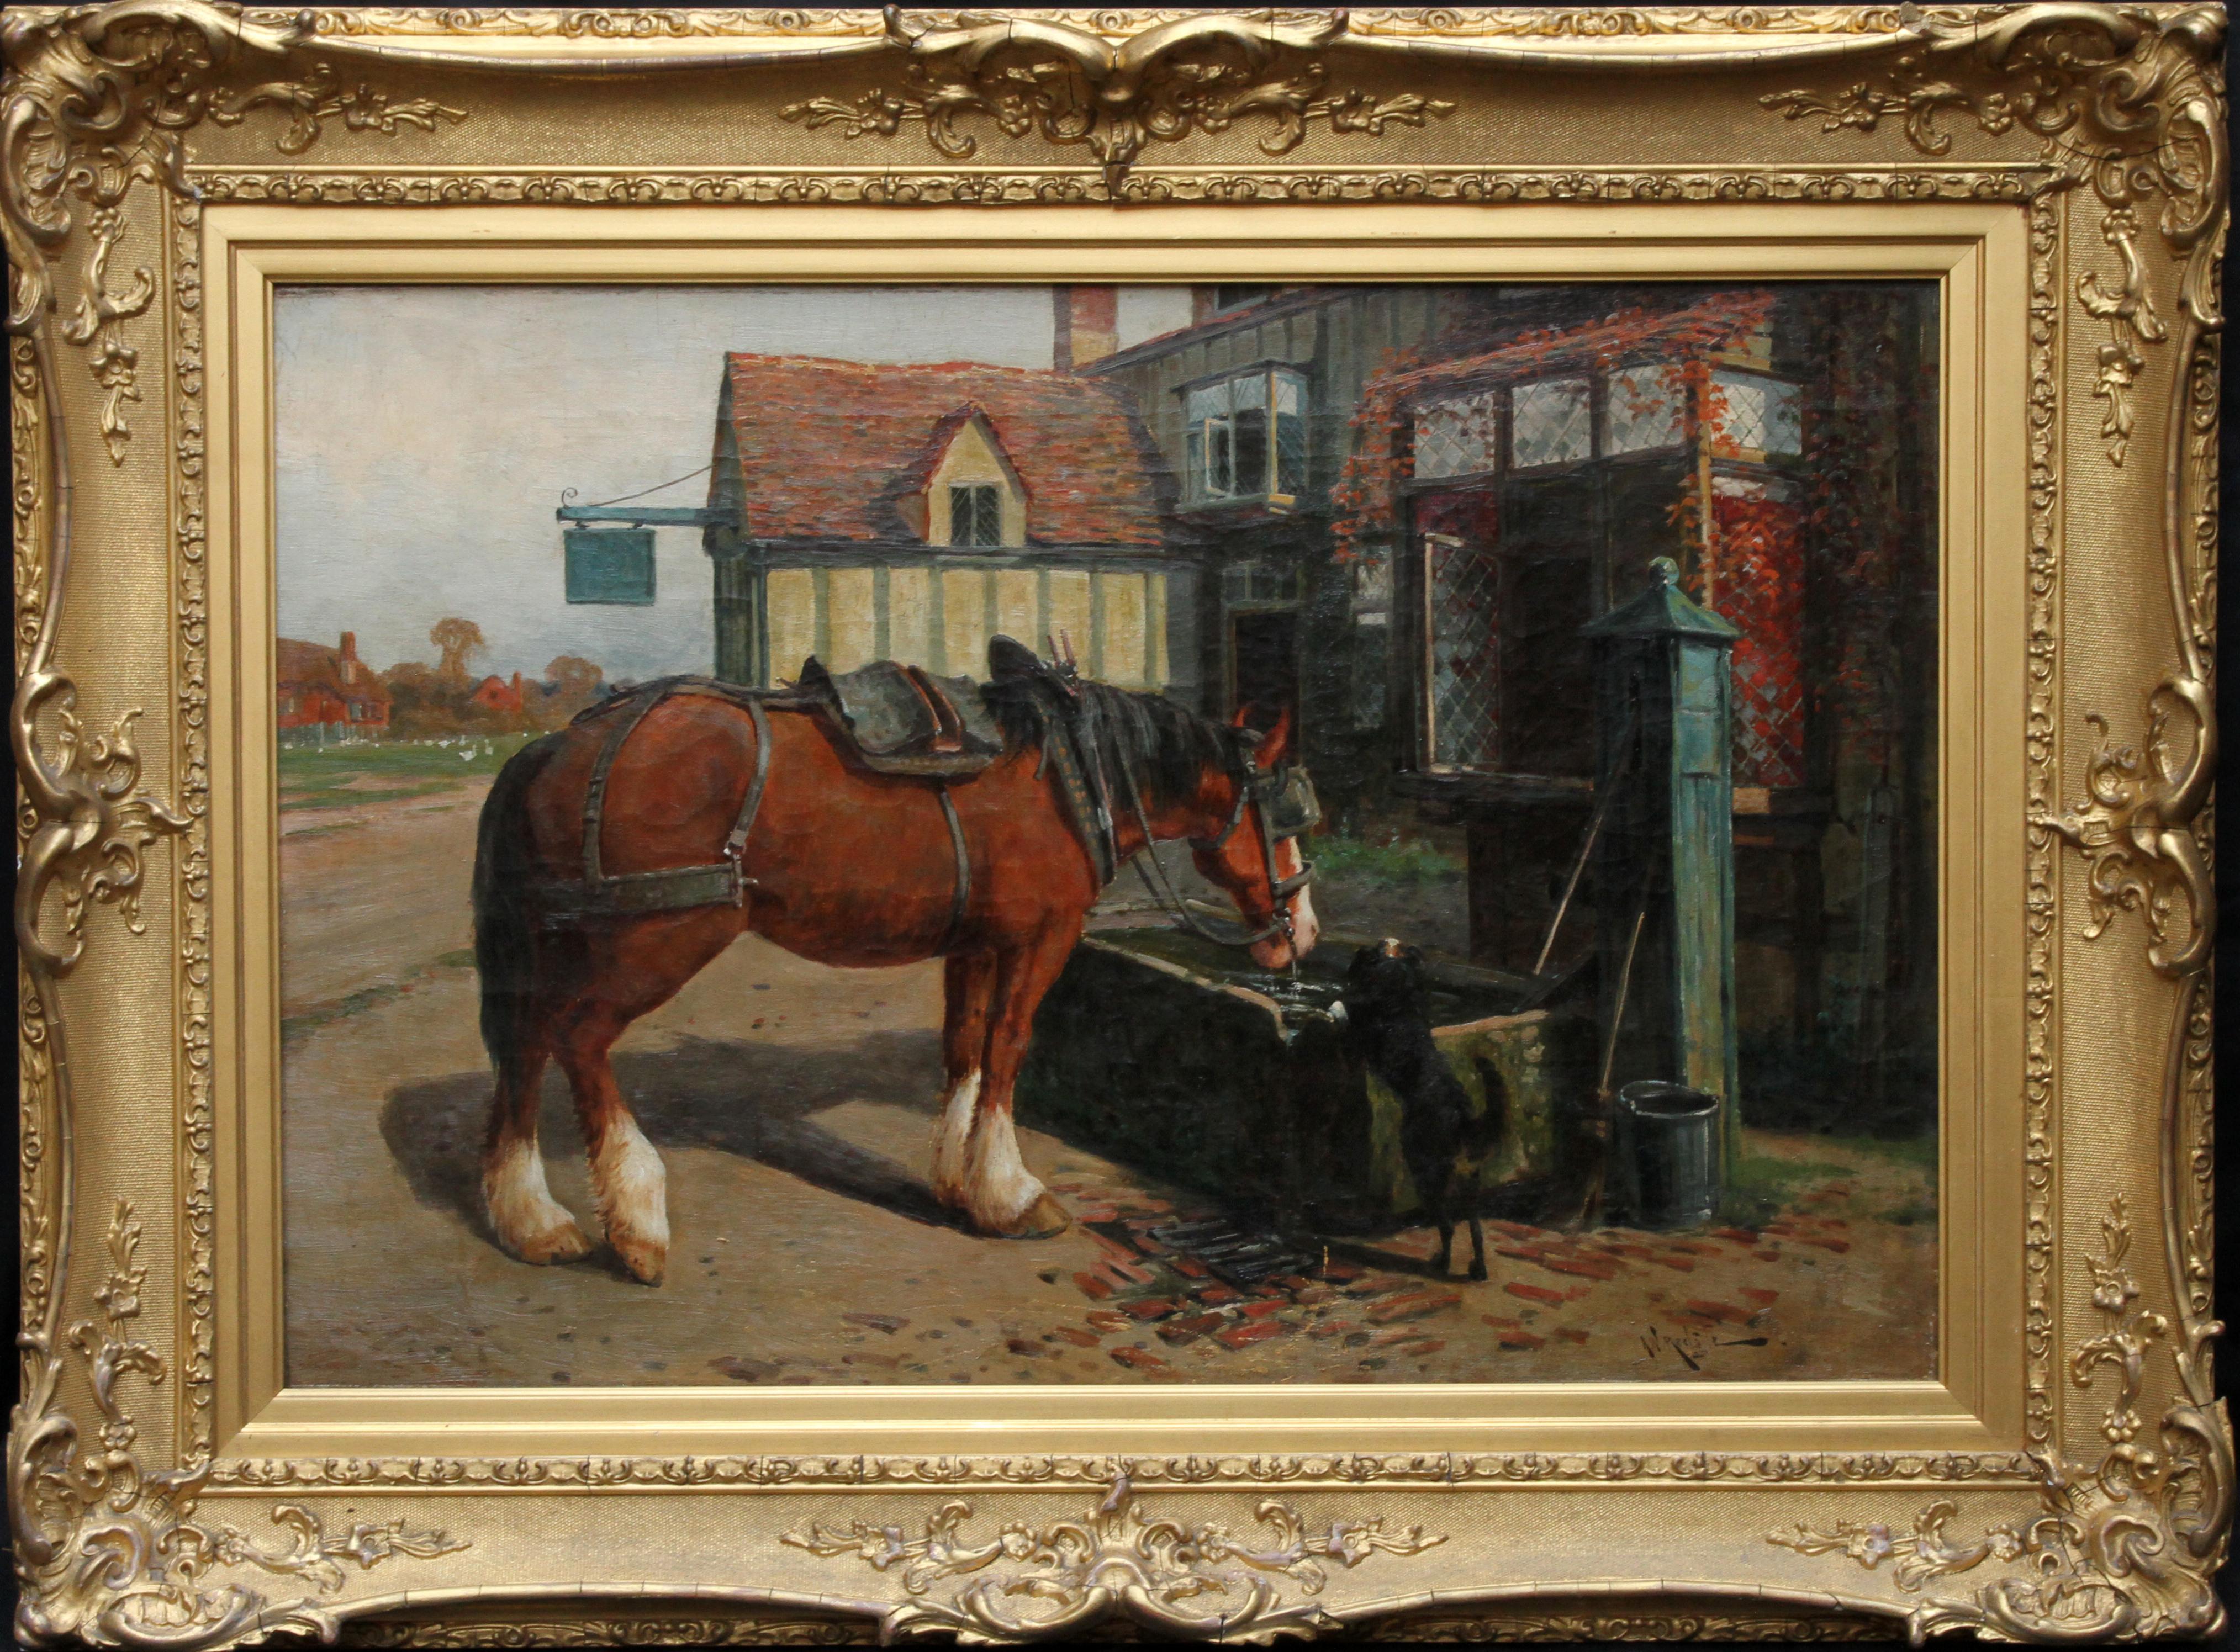 Animal Painting Arthur William Redgate - Cheval de ferme à l'auge devant une taverne - peinture à l'huile d'art animalier de l'époque victorienne britannique